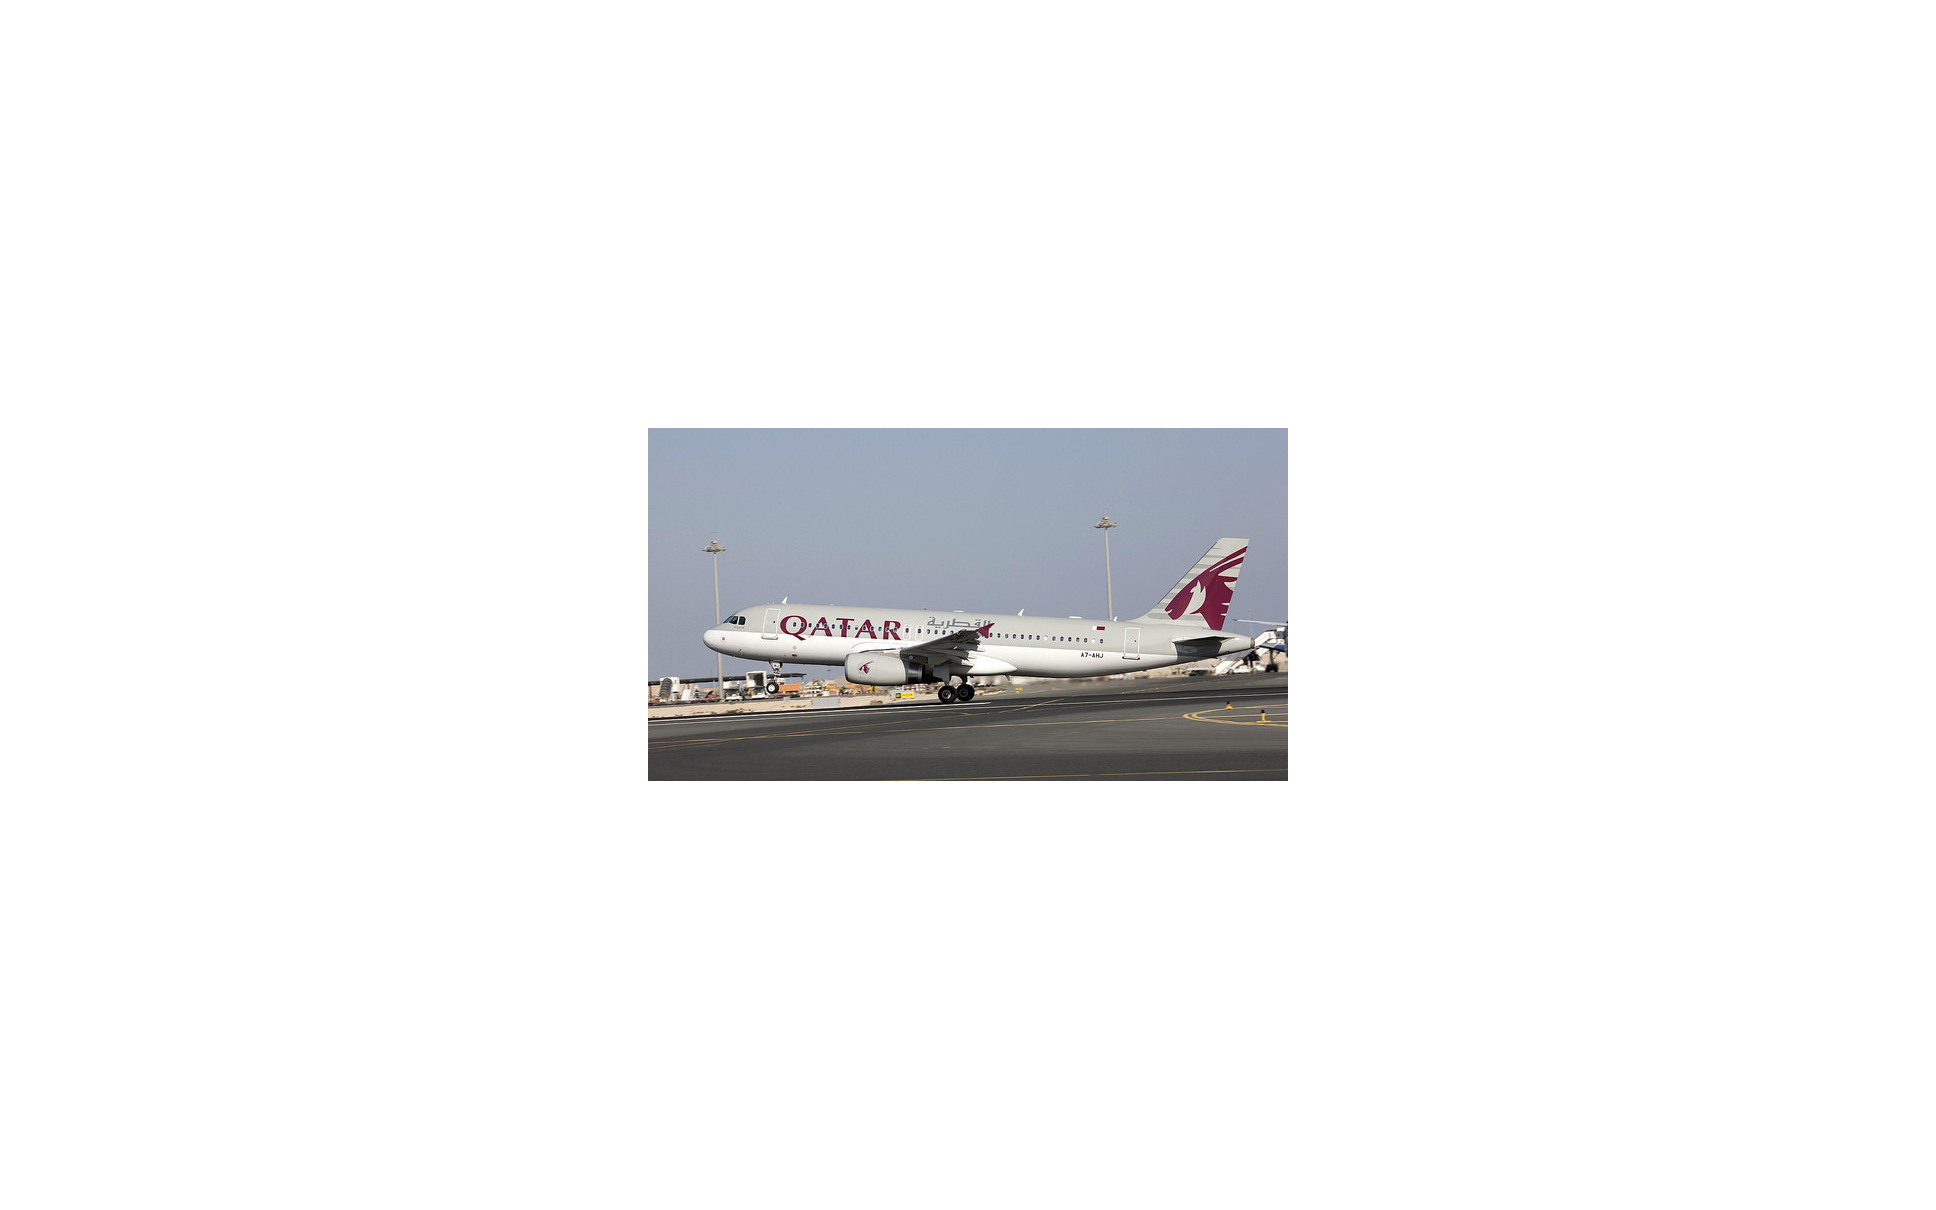 カタール航空の「エアバスA320」